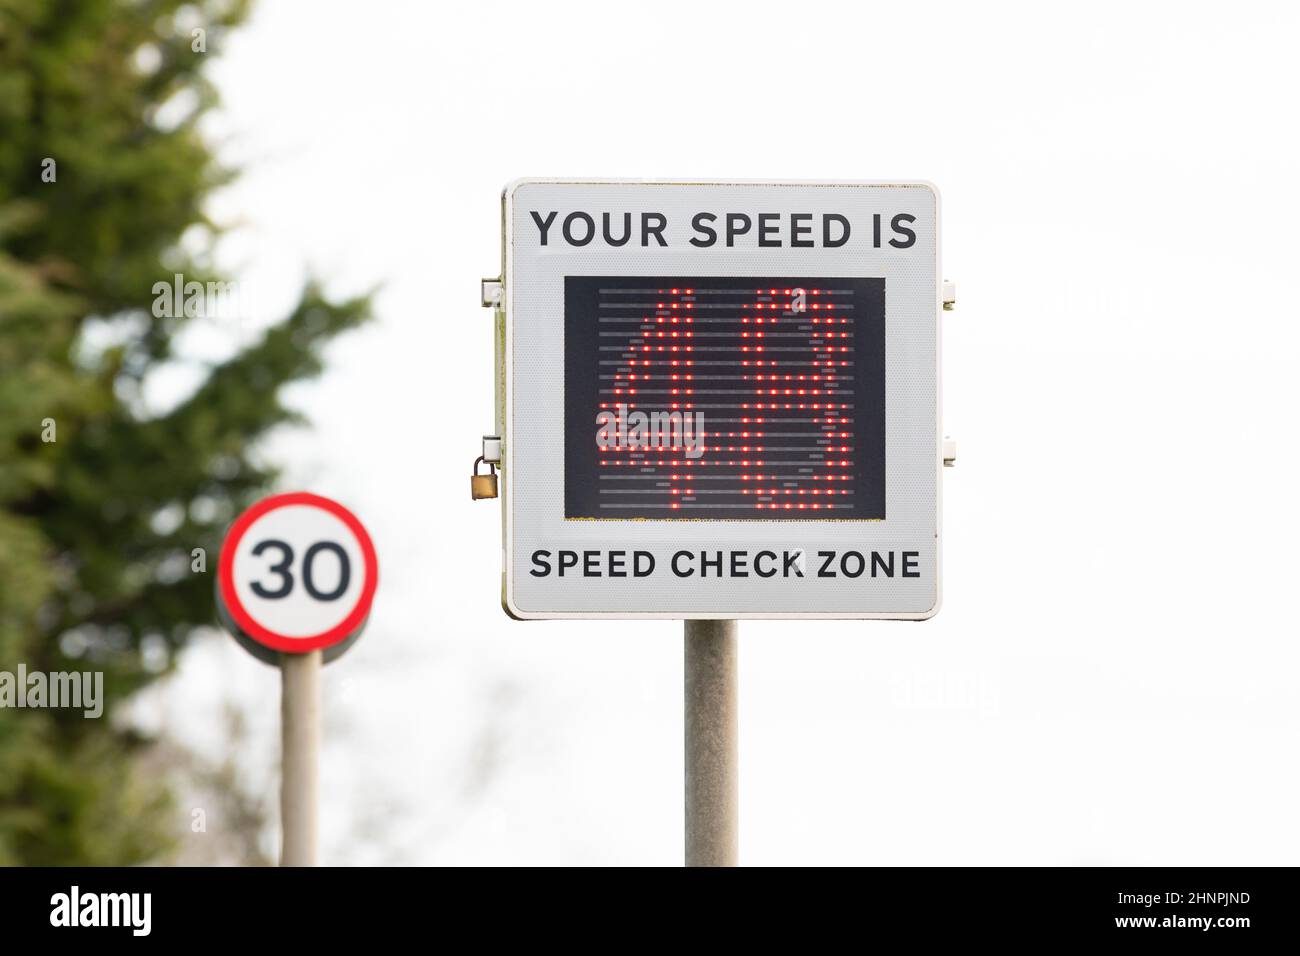 Geschwindigkeitsüberschreitung in 30mph-Zone - Fahrzeug aktiviert Geschwindigkeitsanzeige Geräteschild zeigt Geschwindigkeit von 48mph in 30mph-Zone - England, Großbritannien Stockfoto